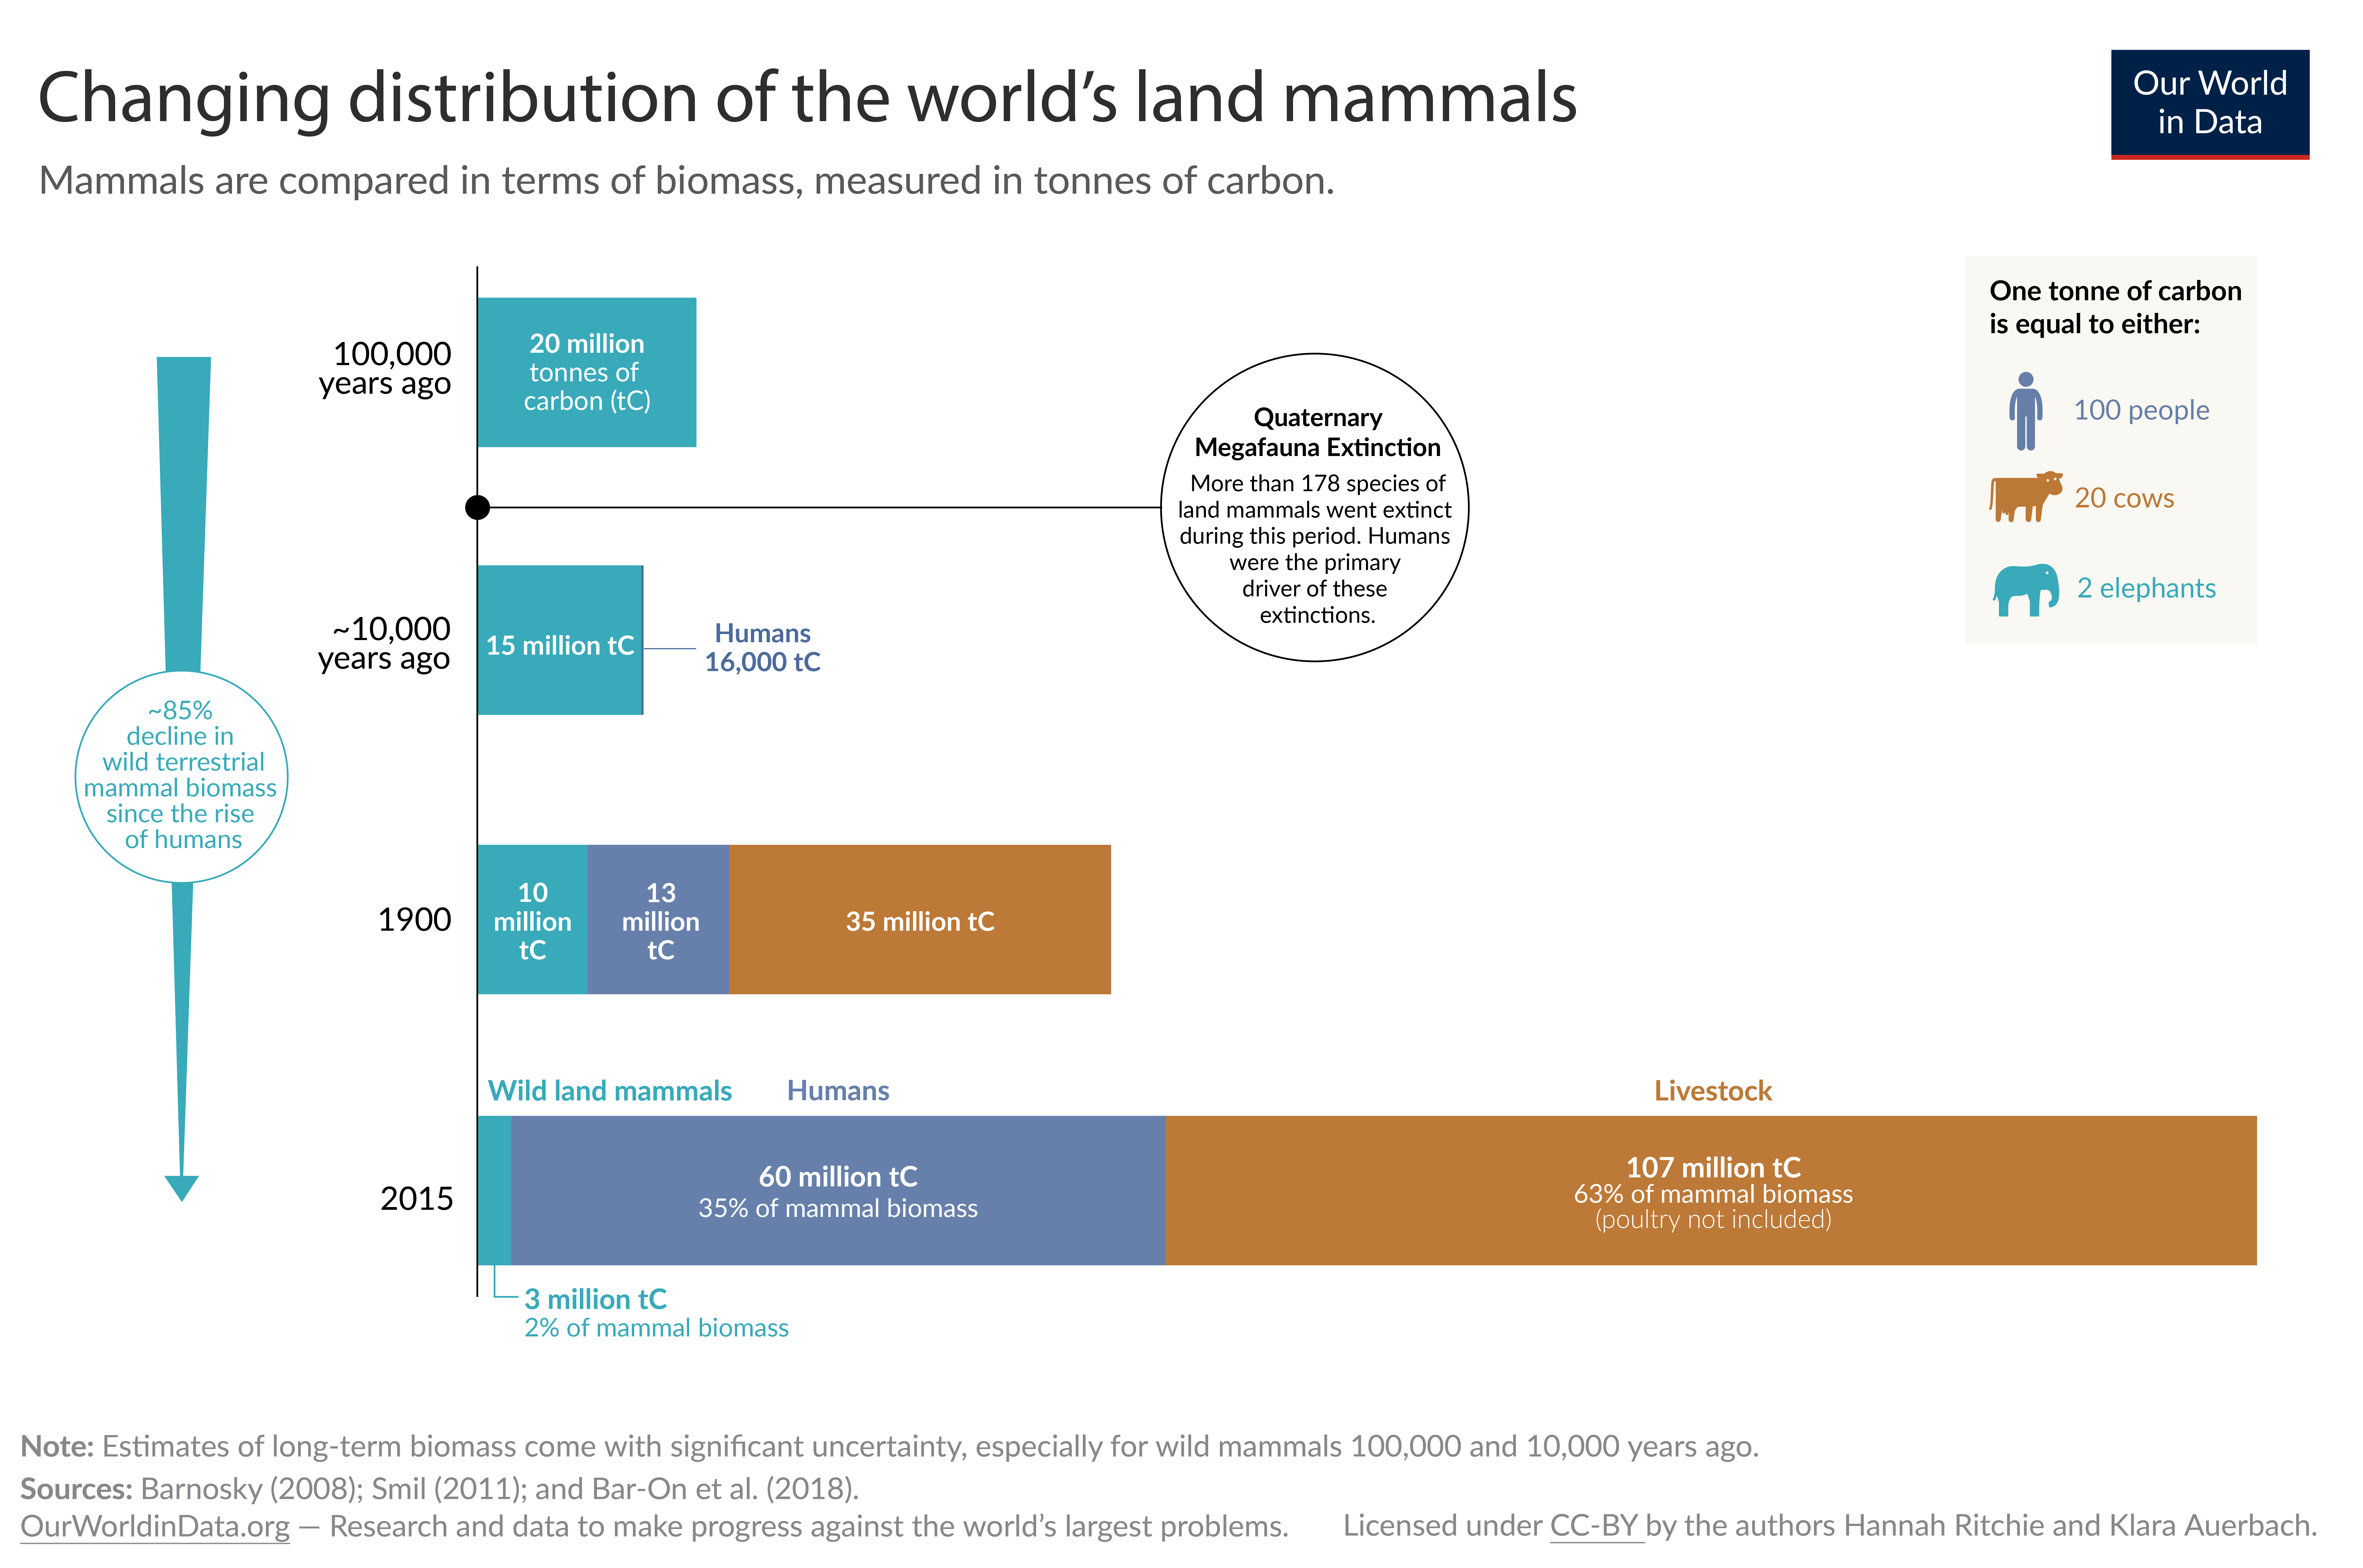 Decline of the worlds wild mammals